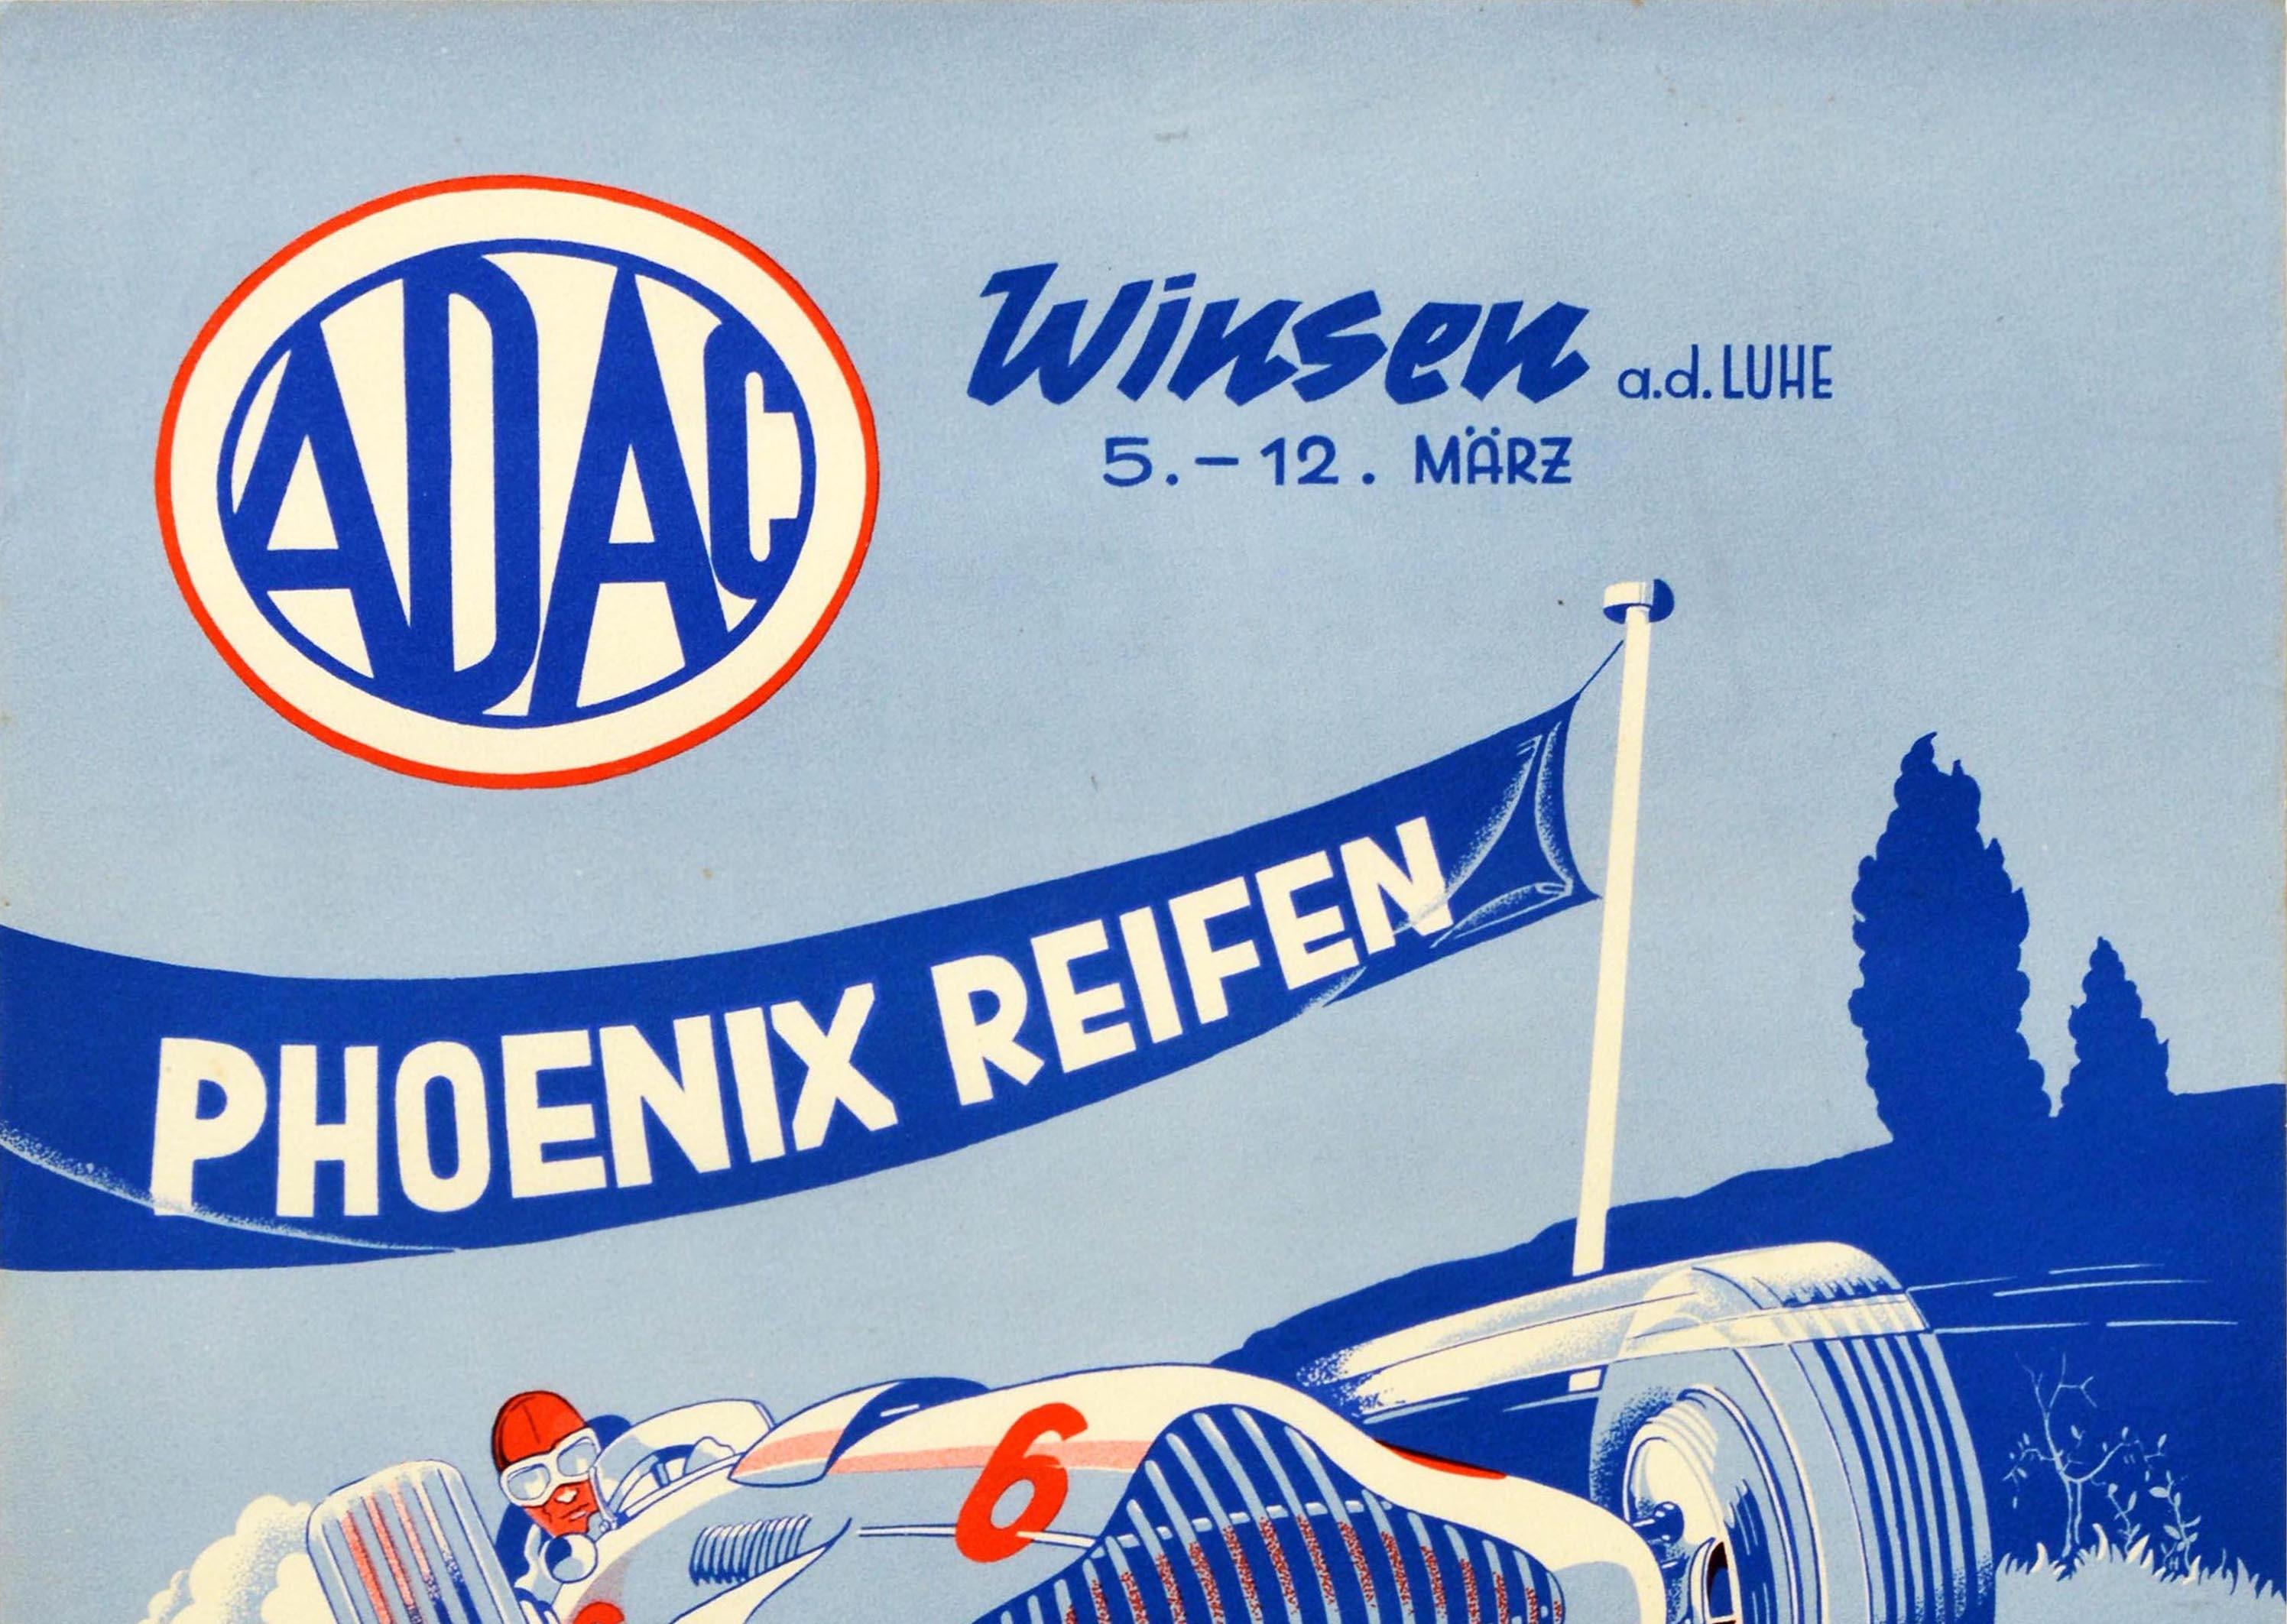 Original Vintage Poster Motorsport Car Exhibition ADAC Phoenix Reifen Tires Ad - Print by Unknown